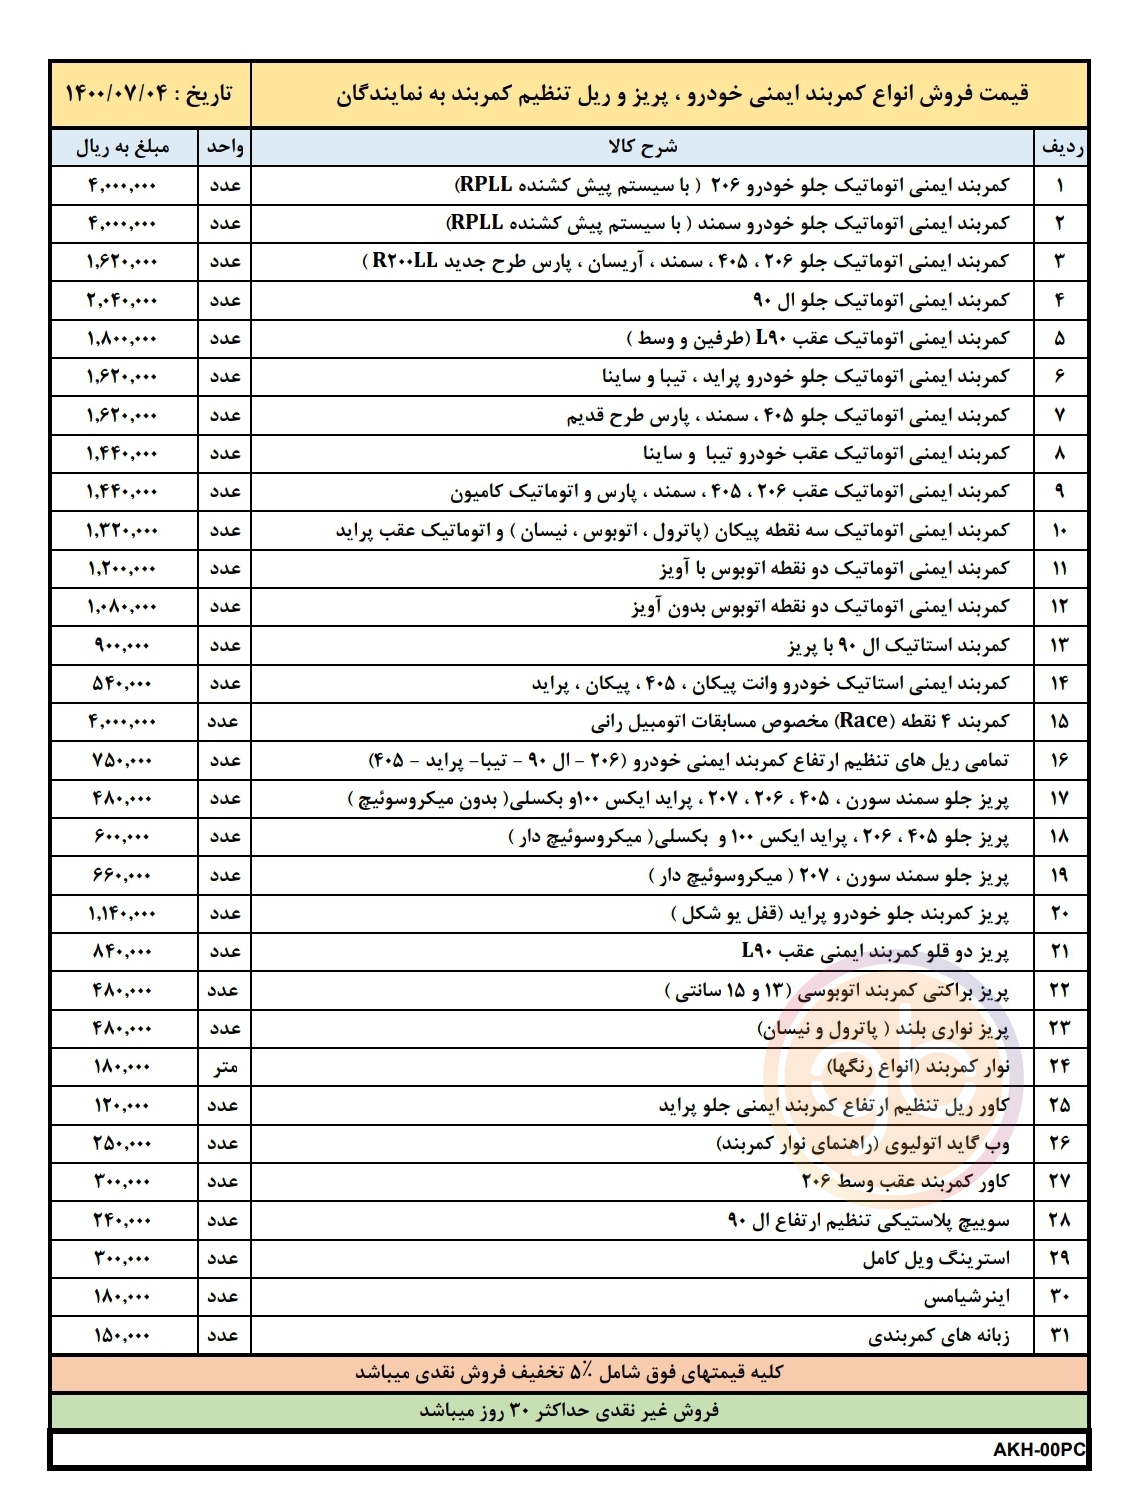 لیست قیمت آذر ماه اخشان